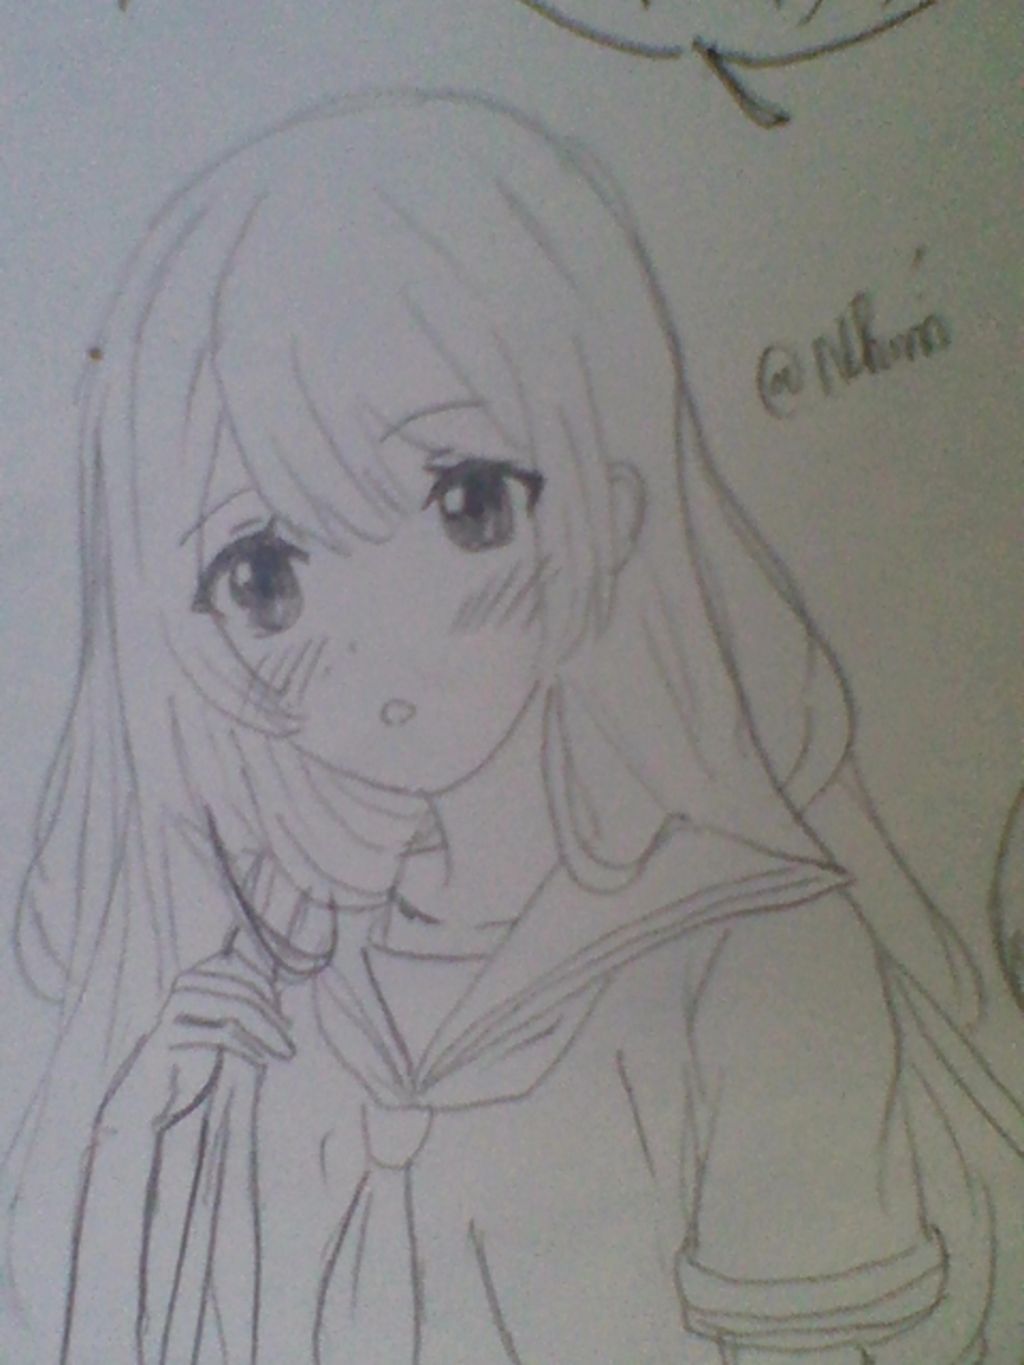 Vẽ anime girl đi học nhé( nhớ đồng phục, tóc dài, mang cặp nhá ...